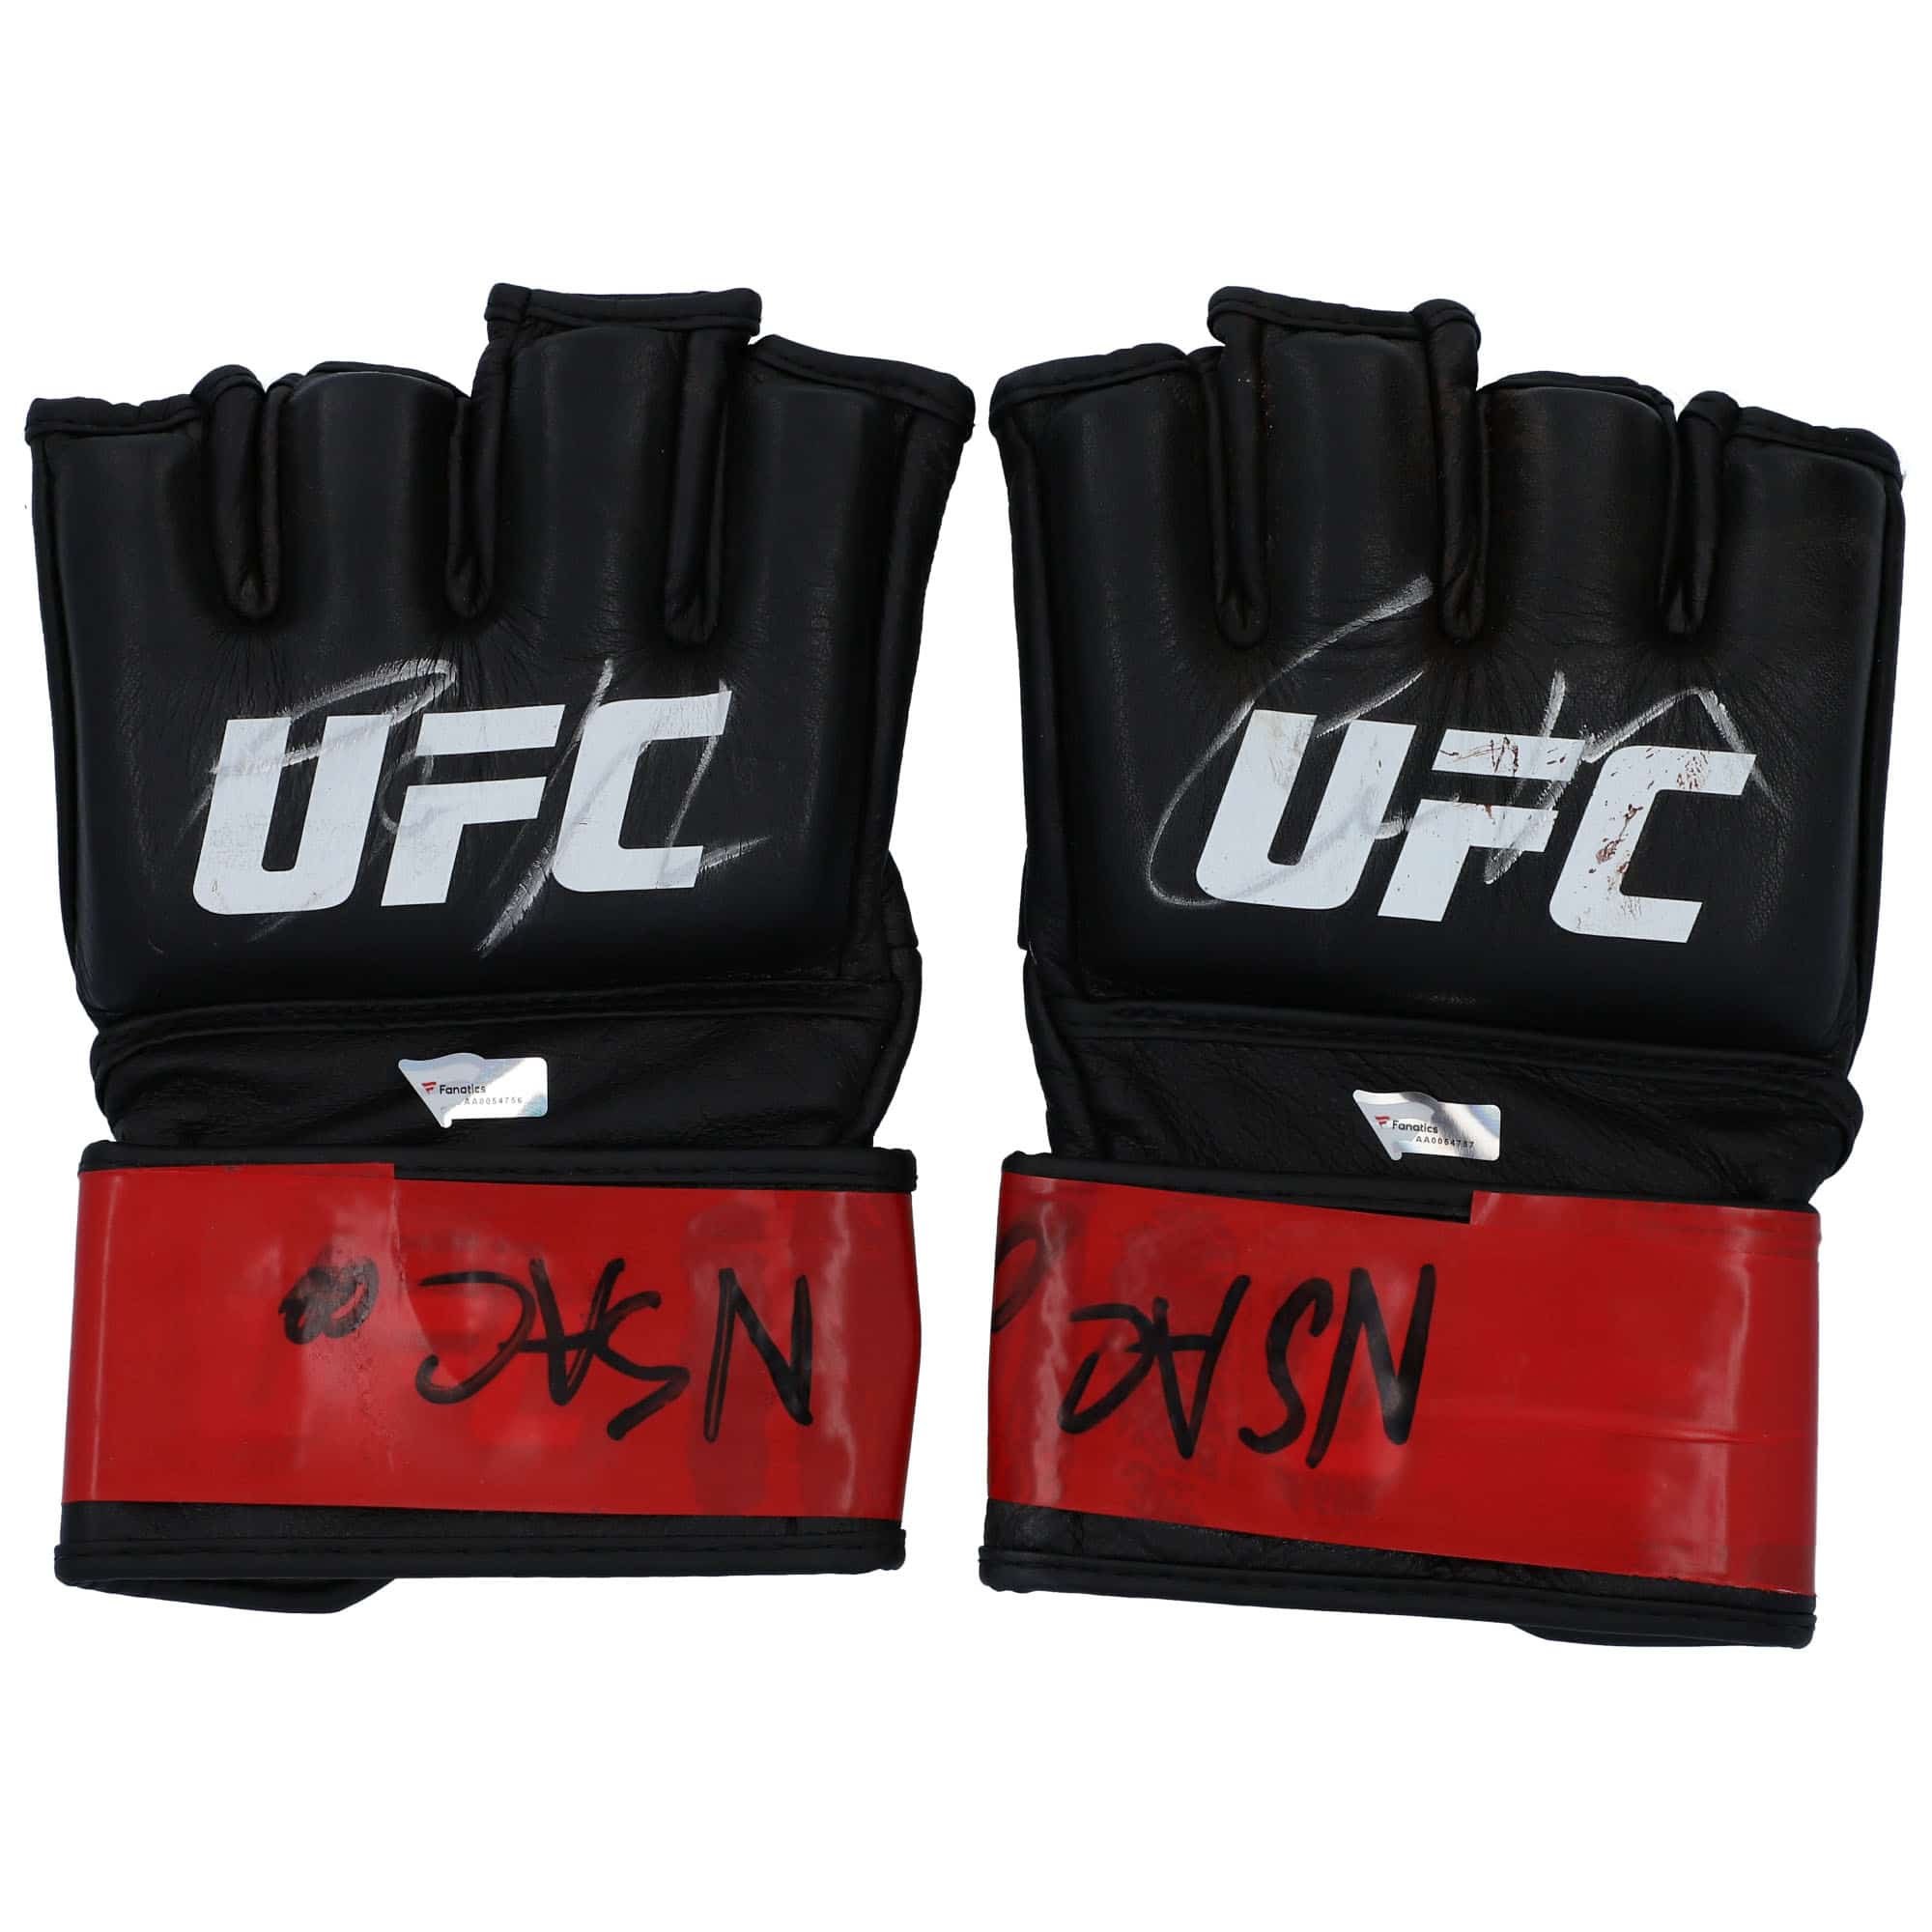 Conor McGregor UFC 246 Auction - Gloves & Wraps